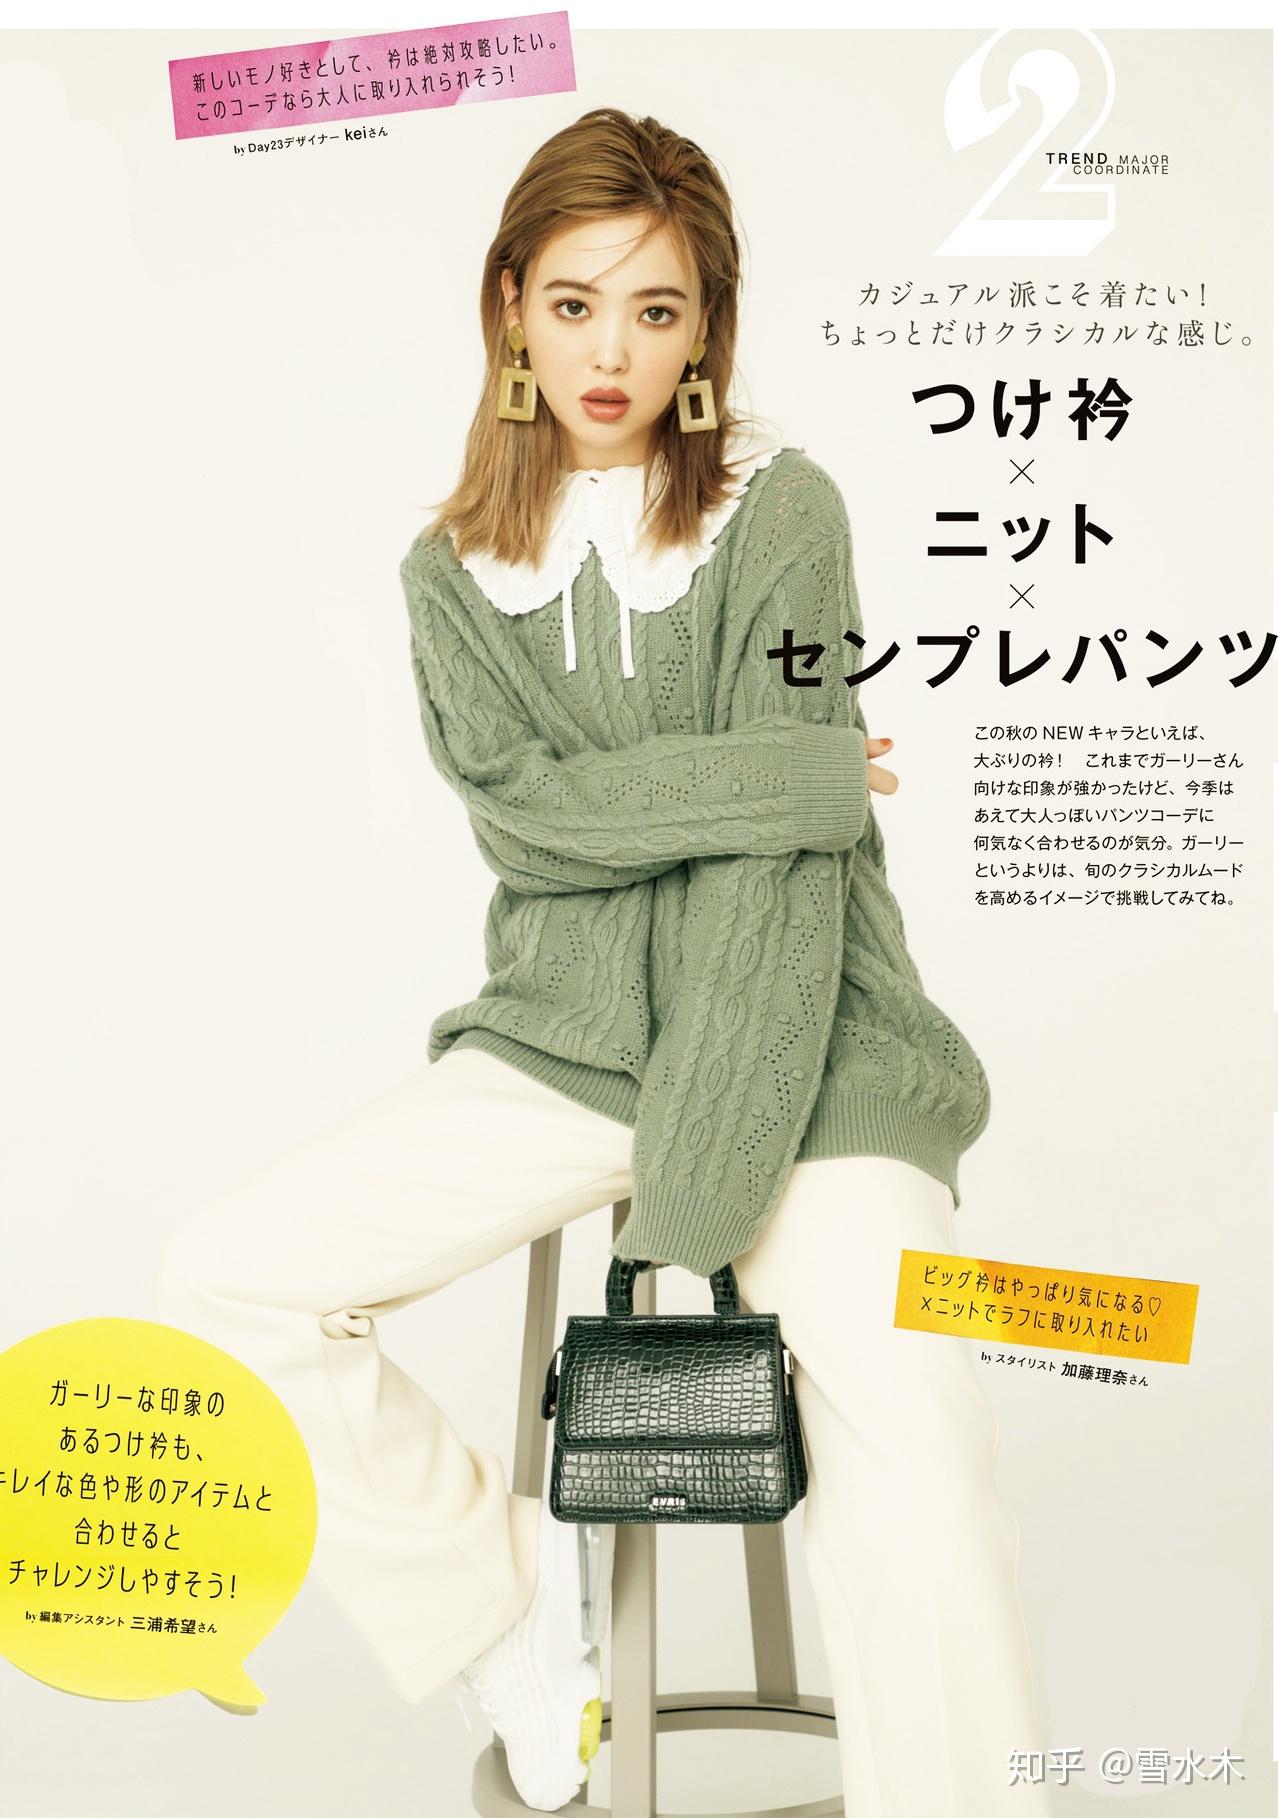 日本杂志vivi模特藤田ニコル演绎8款时尚秋冬搭配被编辑称为今秋最易